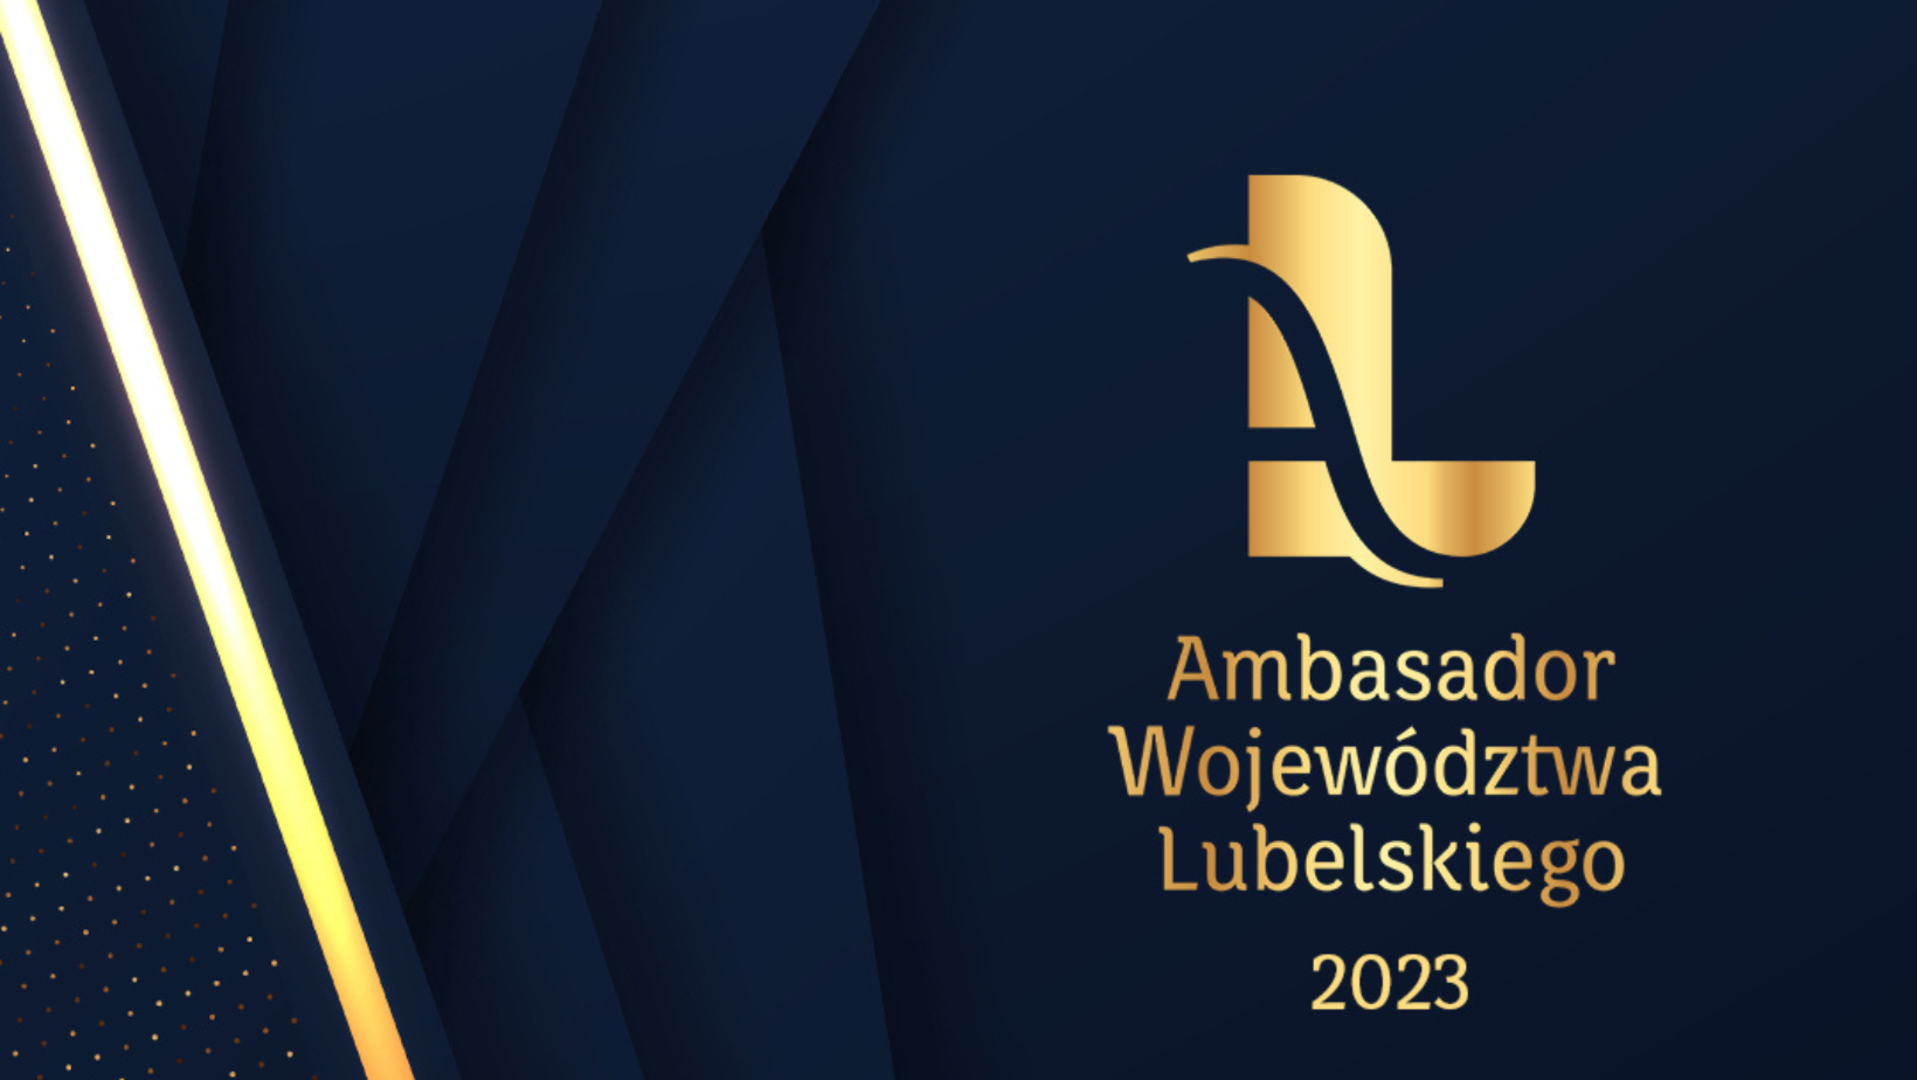 Złota litera L na granatowym tle, napis Ambasador Województwa Lubelskiego 2023